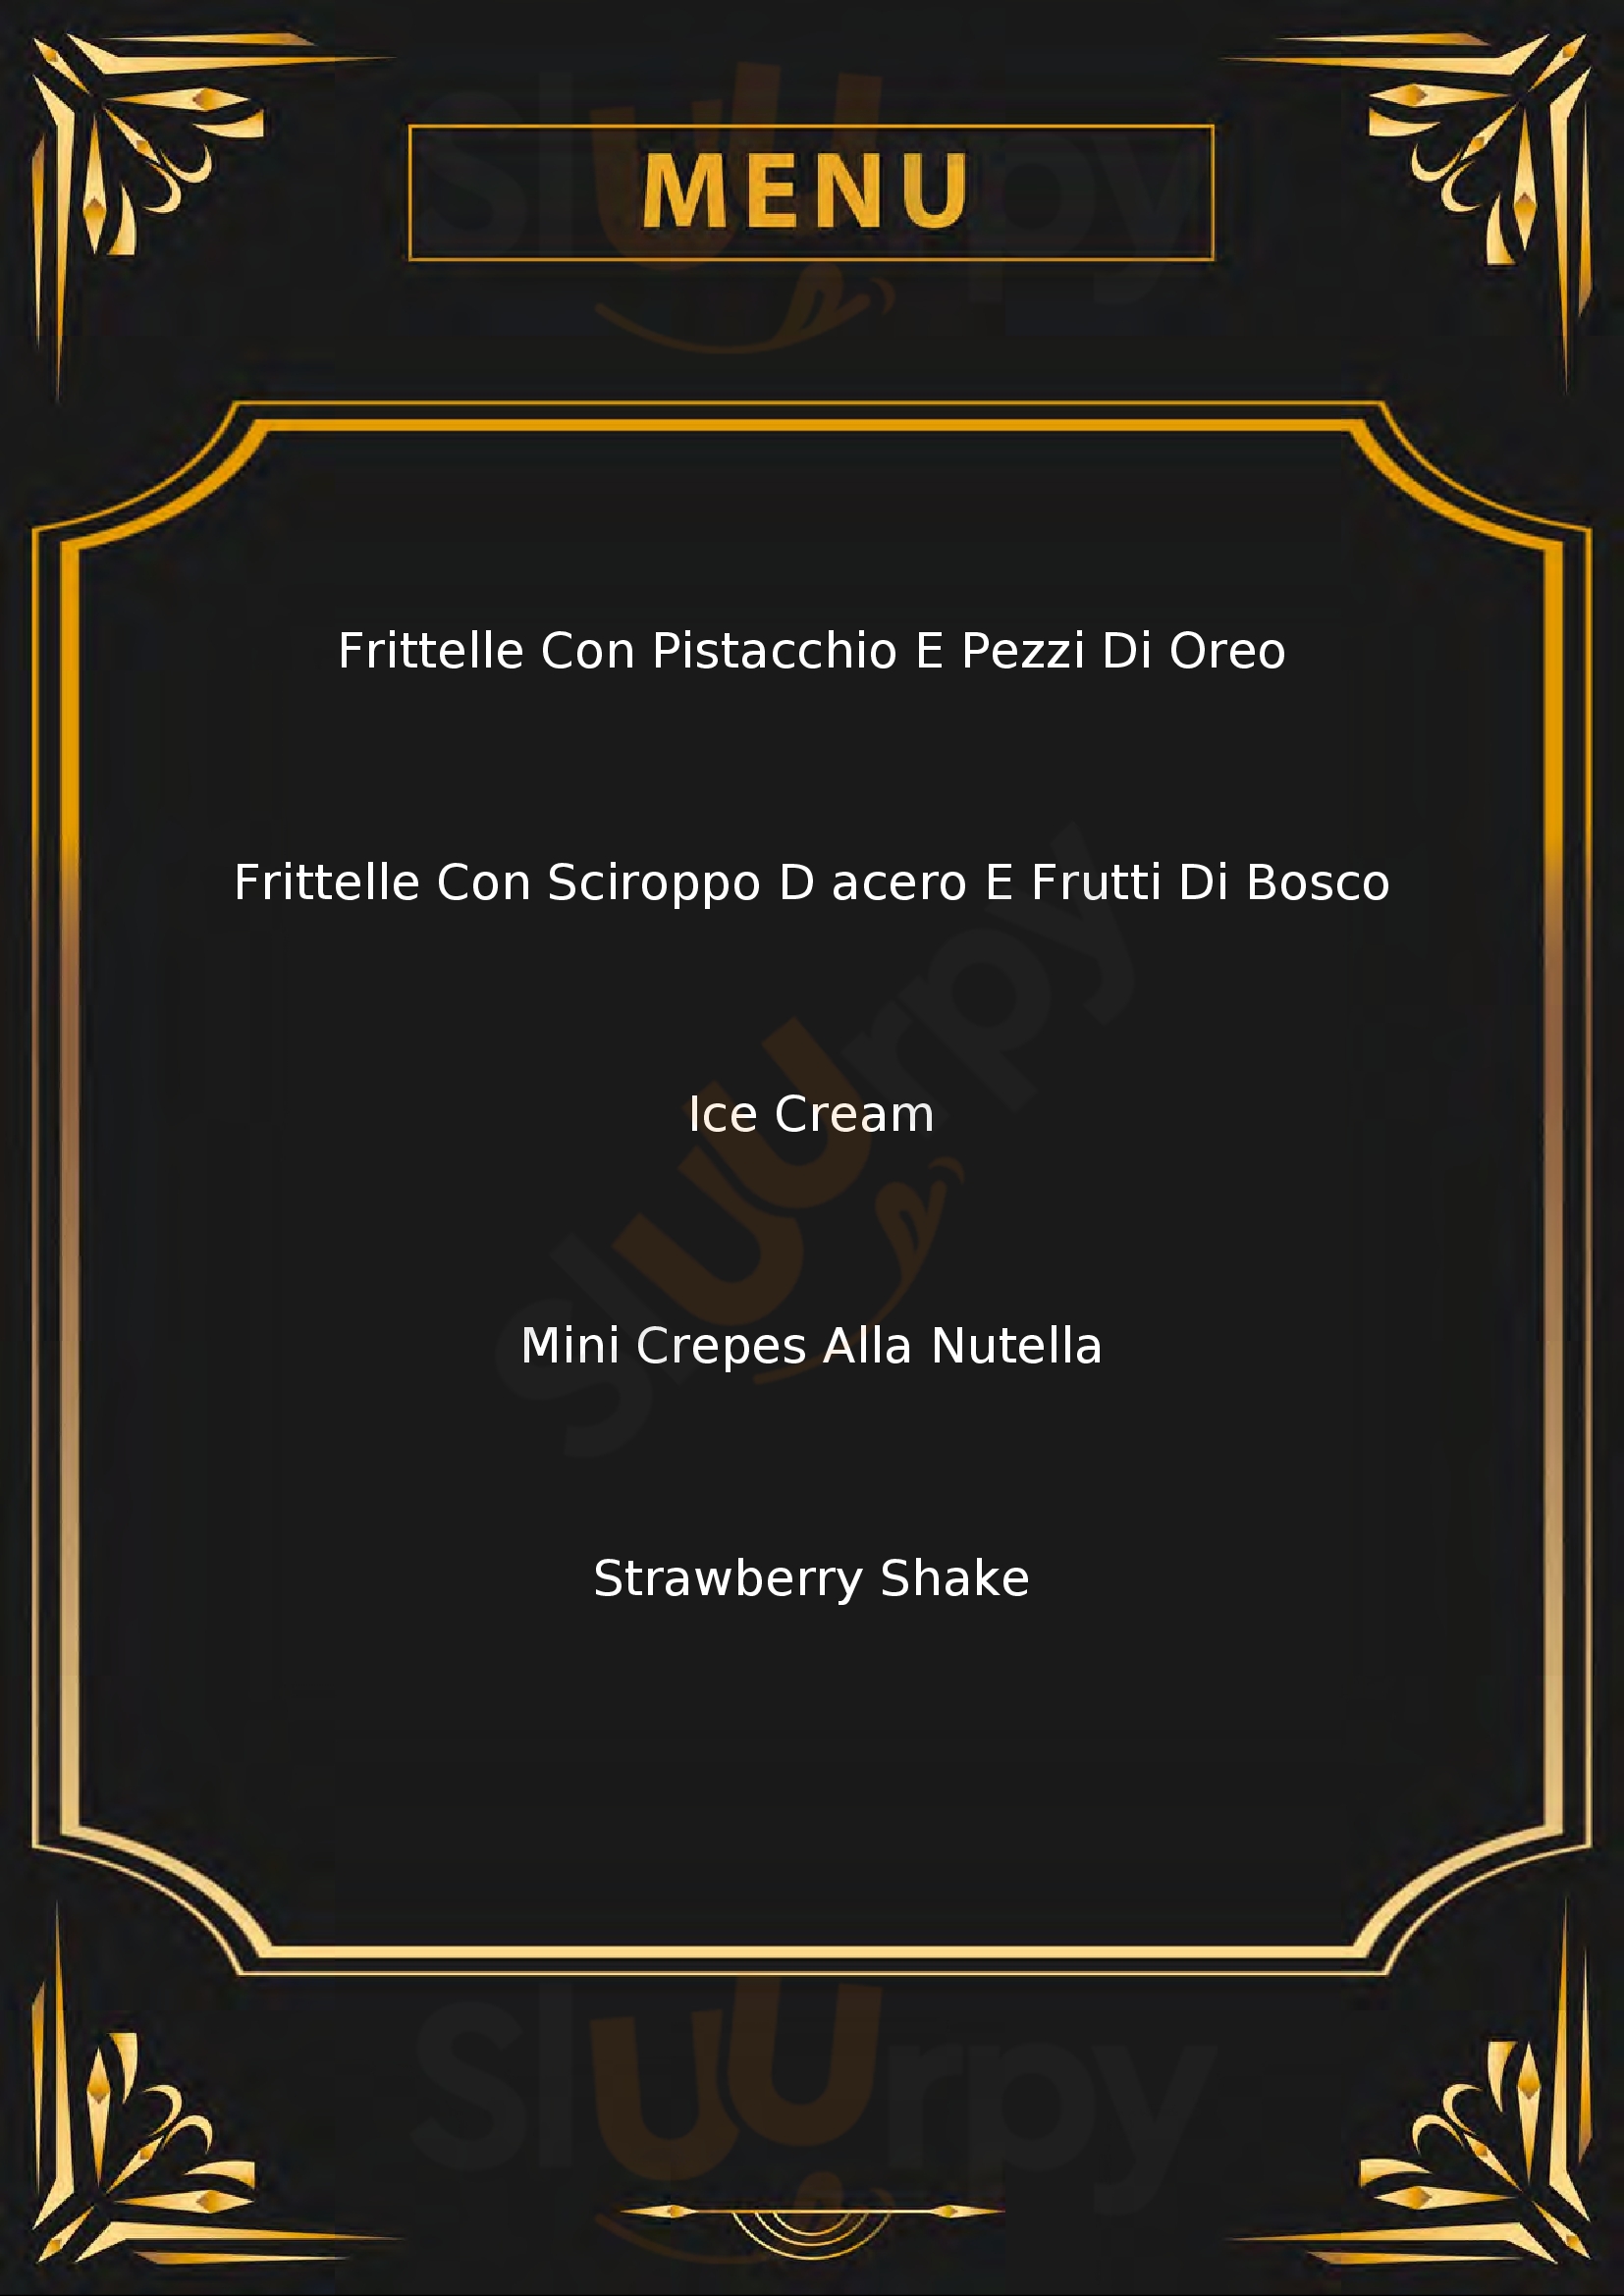 Punto Gelato gelateria Arezzo menù 1 pagina